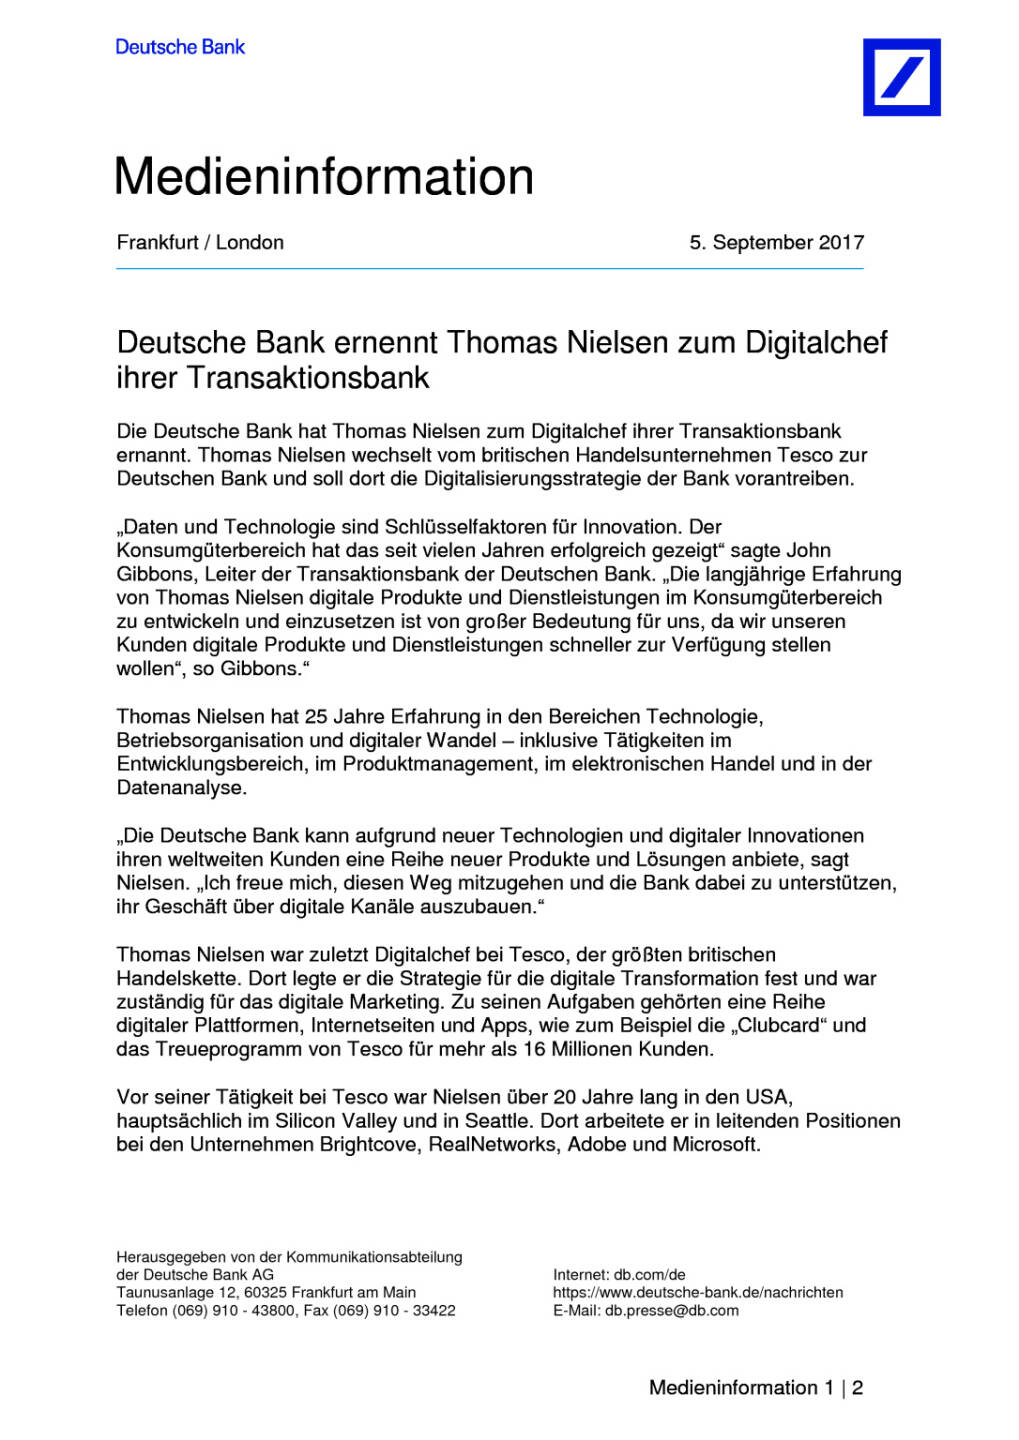 Deutsche Bank ernennt Thomas Nielsen zum Digitalchef ihrer Transaktionsbank, Seite 1/2, komplettes Dokument unter http://boerse-social.com/static/uploads/file_2326_deutsche_bank_ernennt_thomas_nielsen_zum_digitalchef_ihrer_transaktionsbank.pdf